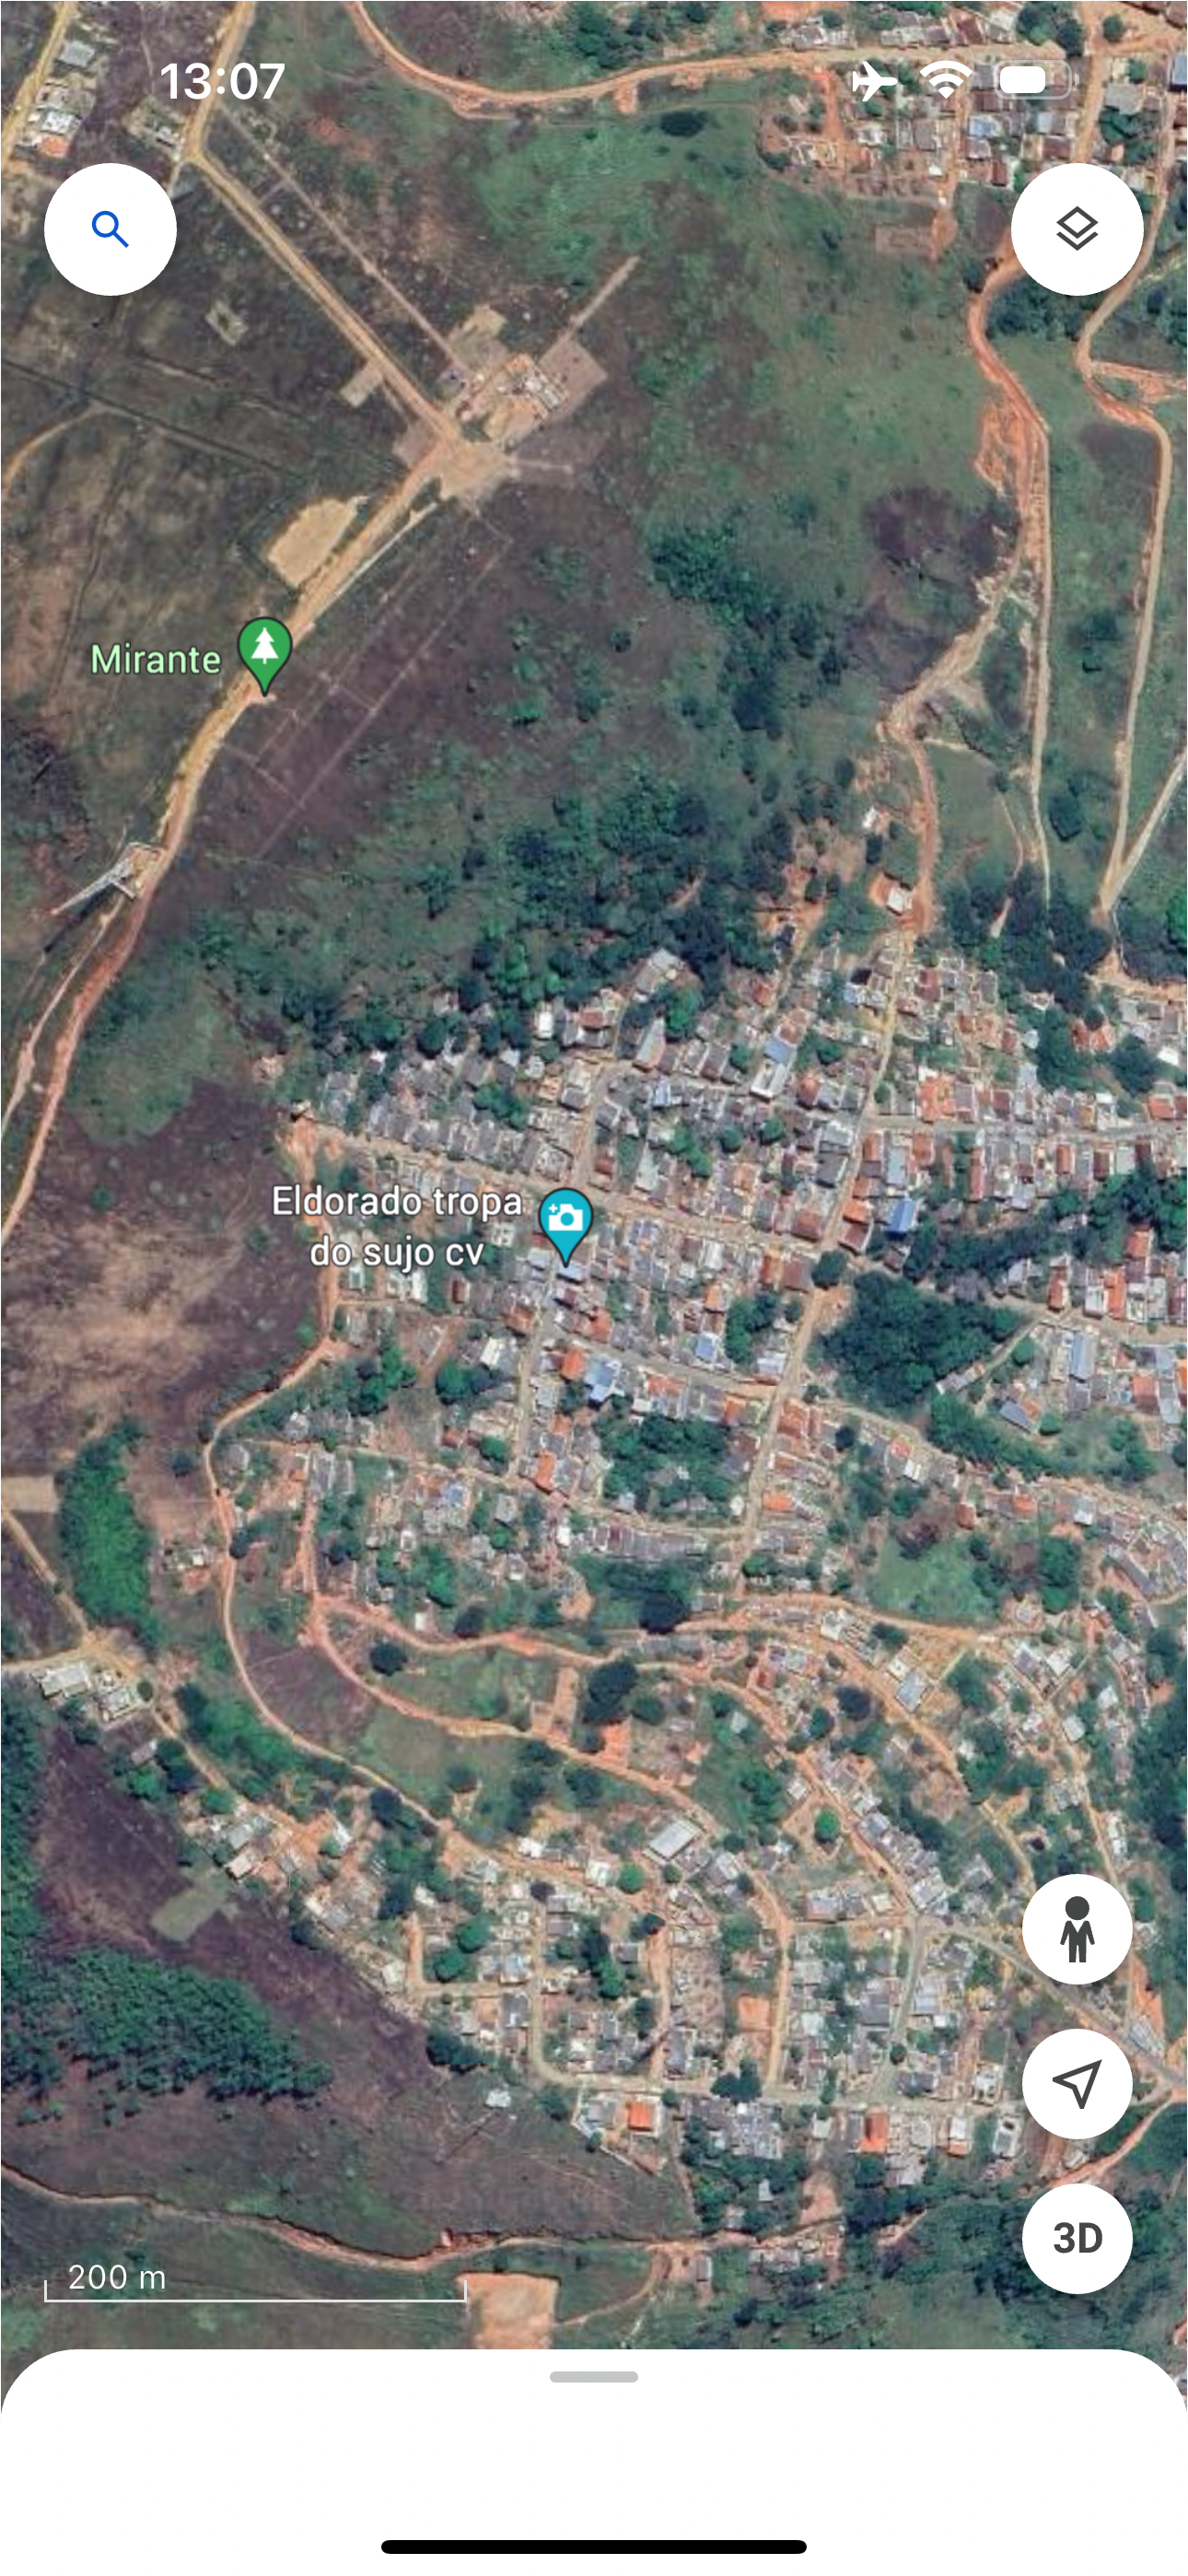 Internauta vai usar o Google Maps em morro de Teófilo Otoni e encontra indicação de facção: Tropa do Sujo (CV)